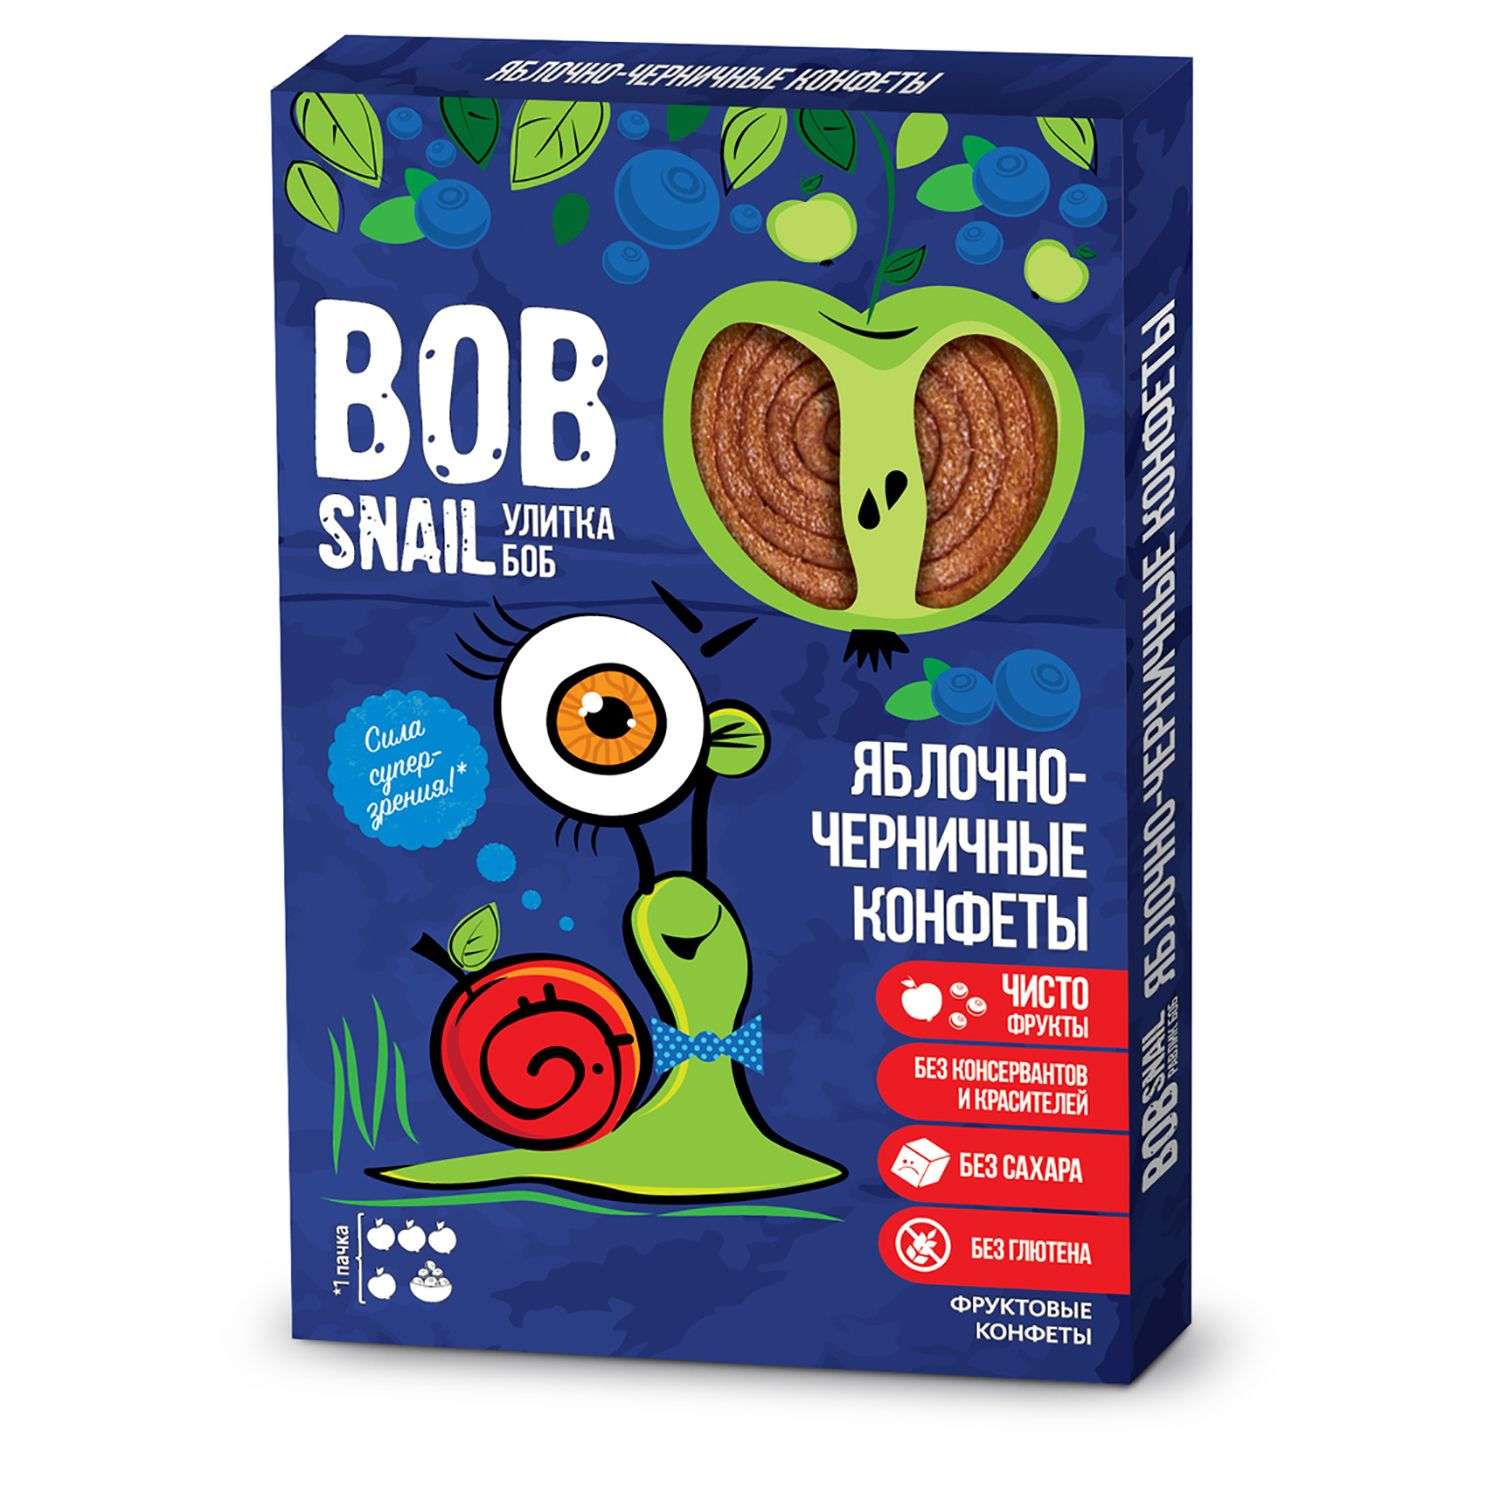 Конфеты Bob Snail натуральные без сахара яблоко-черника 60г - фото 1